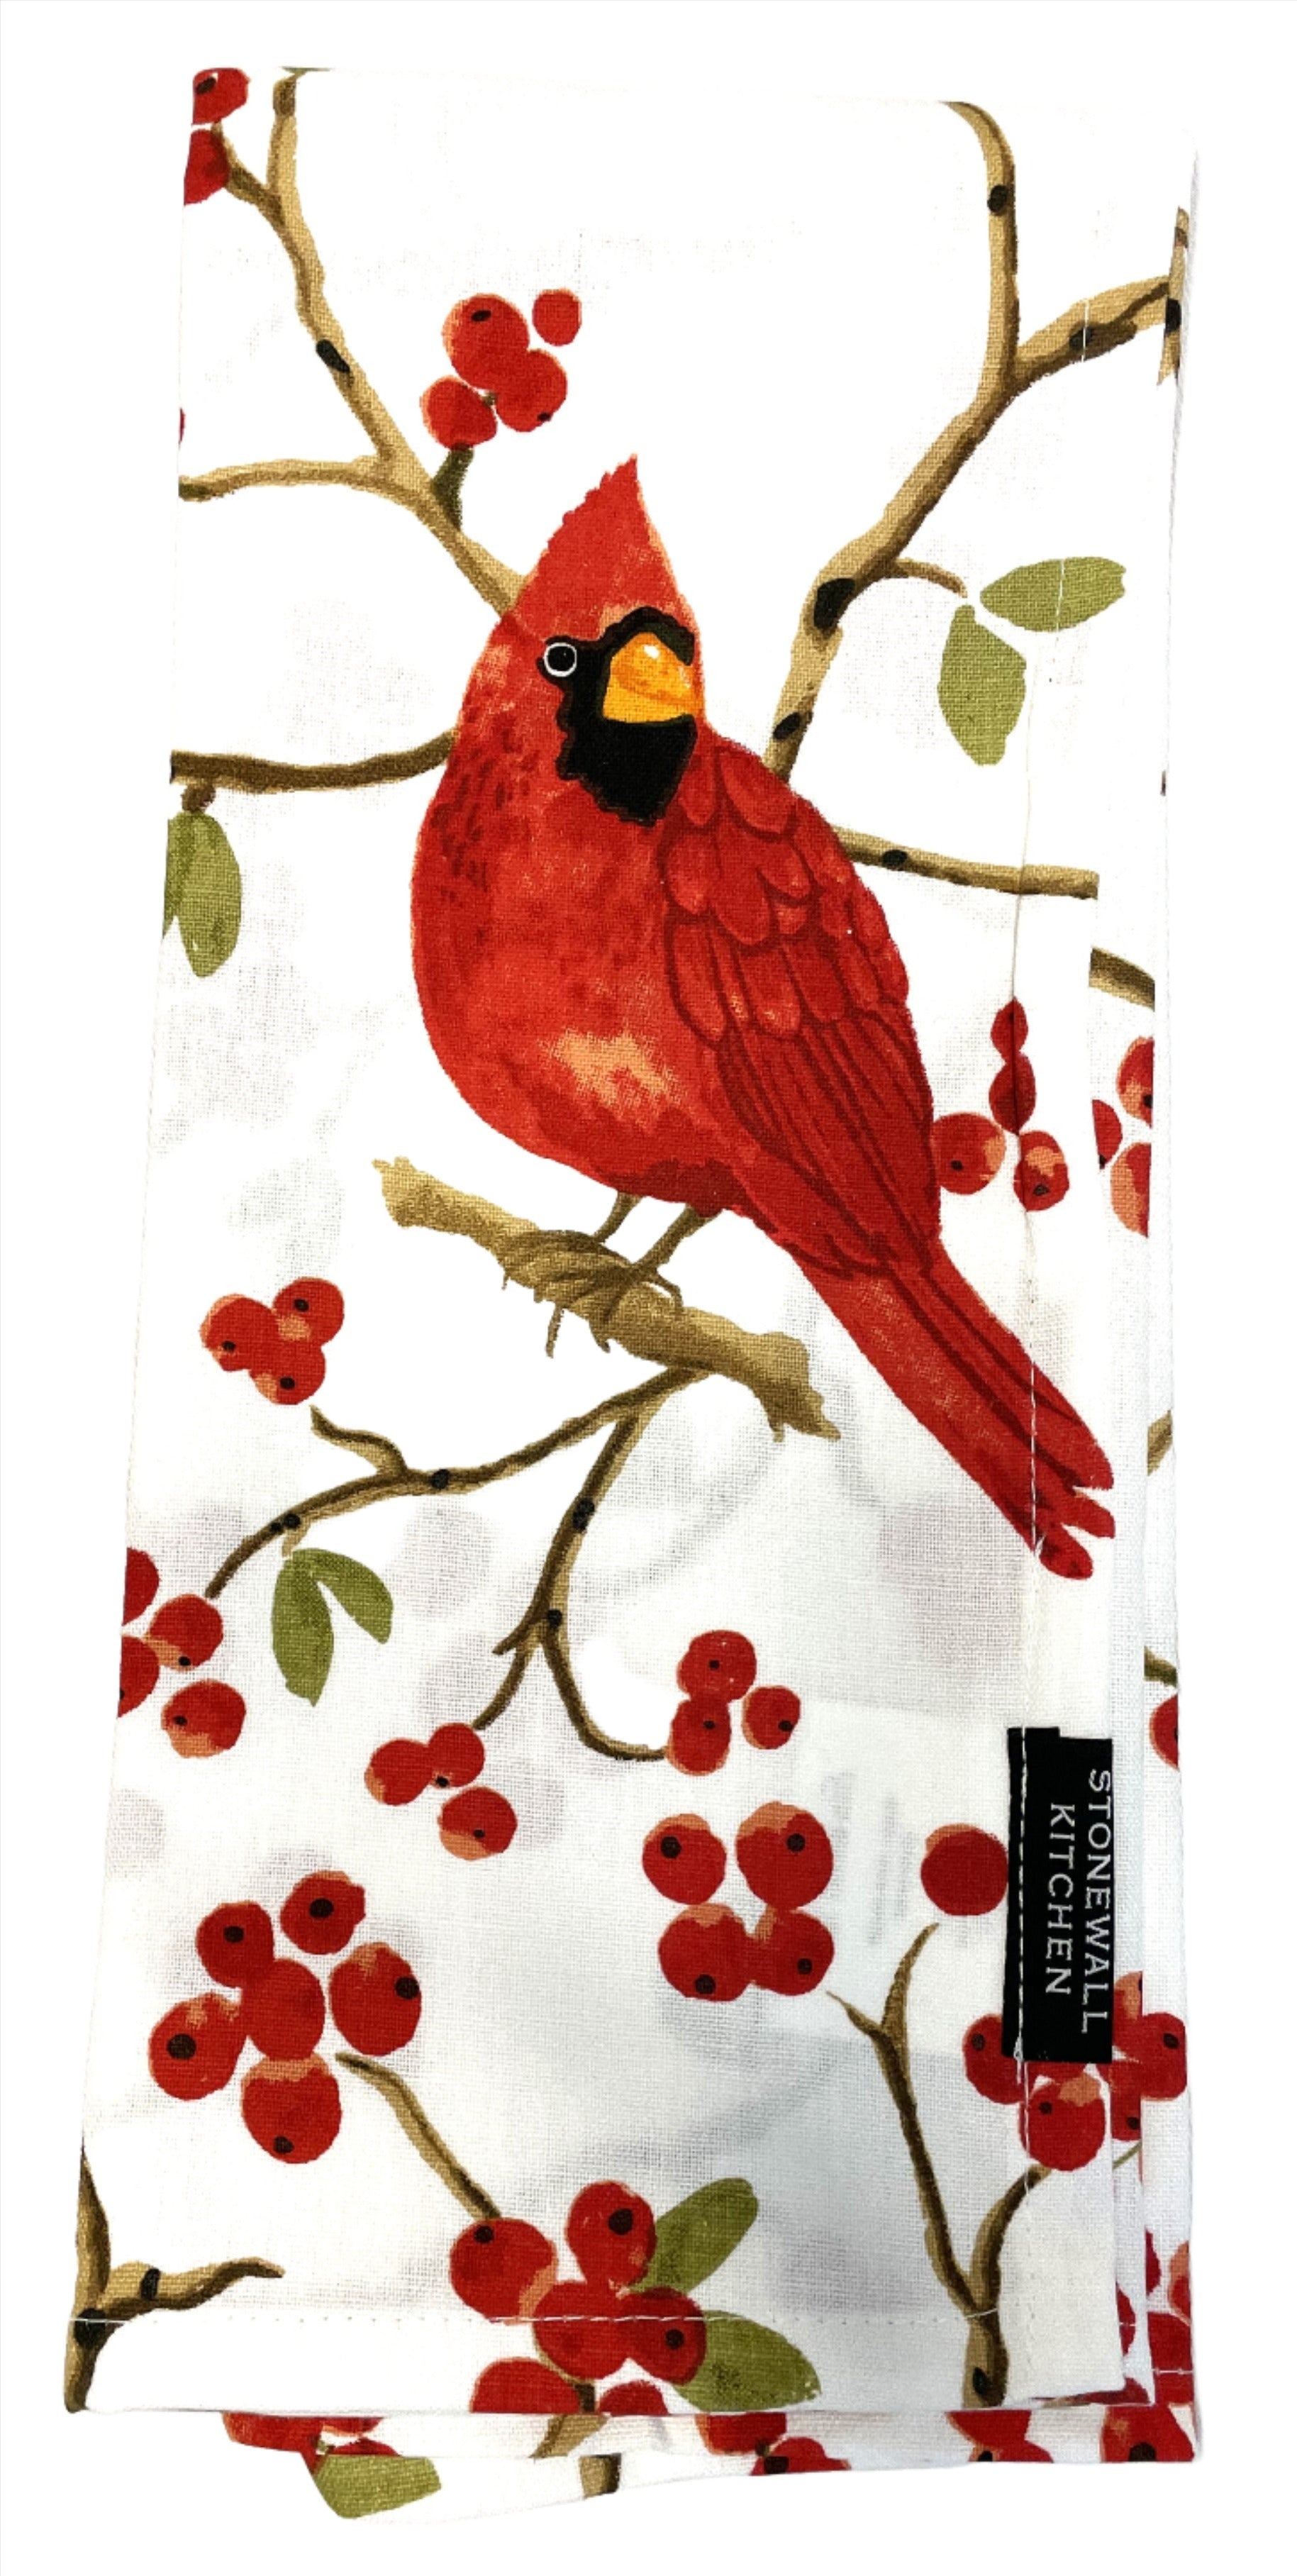 Gingiber Cardinal Tea Towel